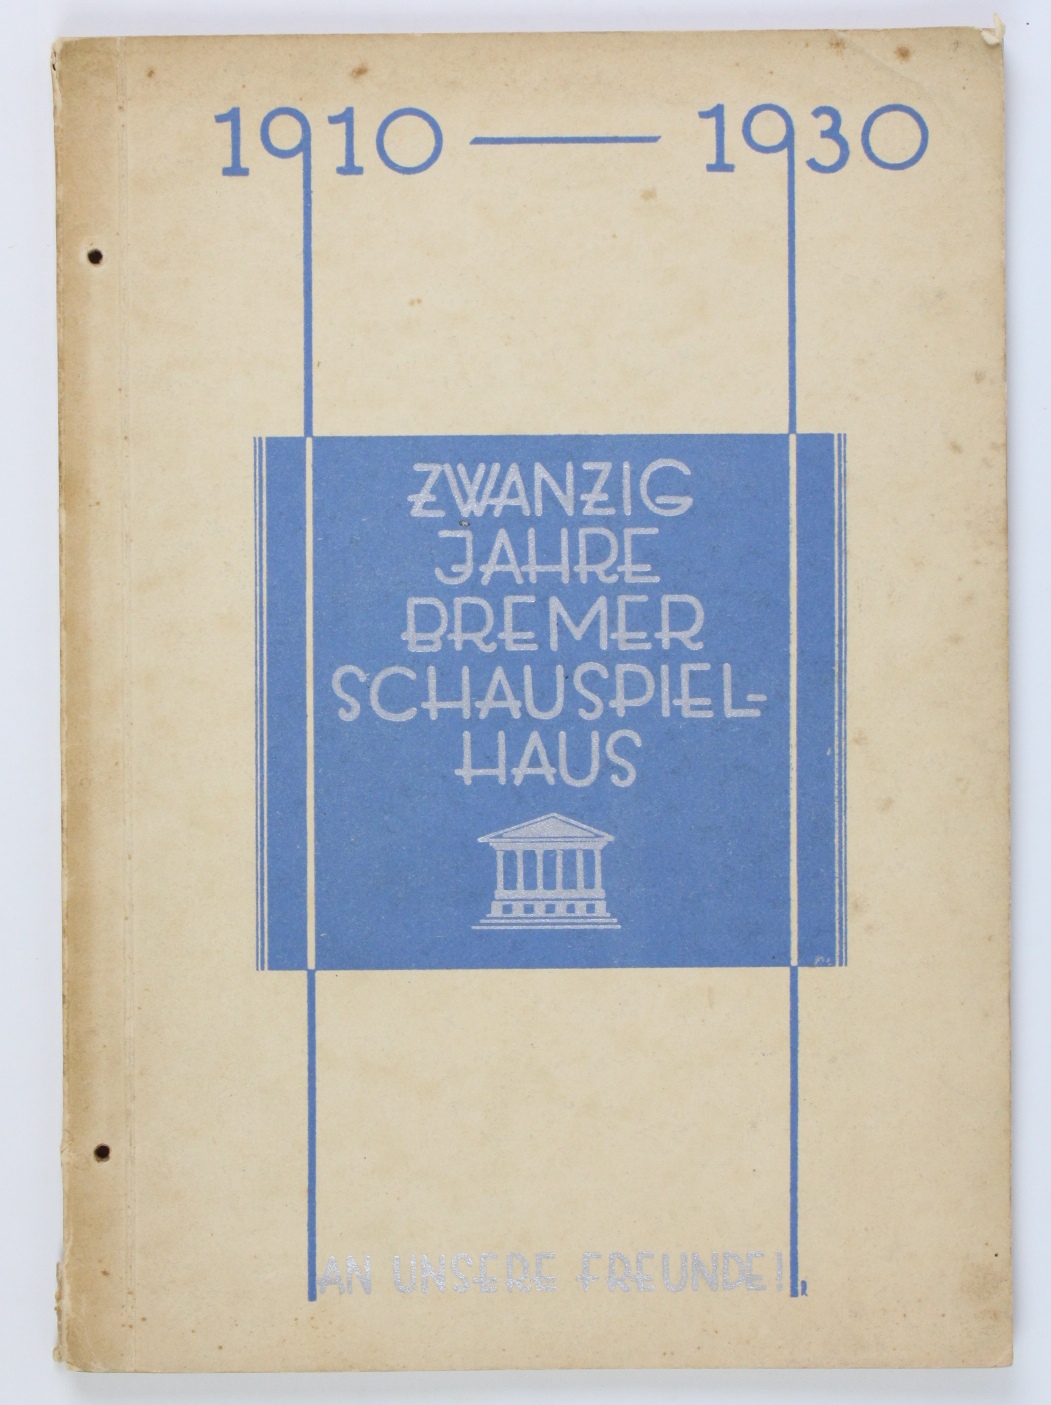 Zwanzig Jahre Bremer Schauspielhaus 1910-1930 - Wiegand, Johannes und Eduard Ichon